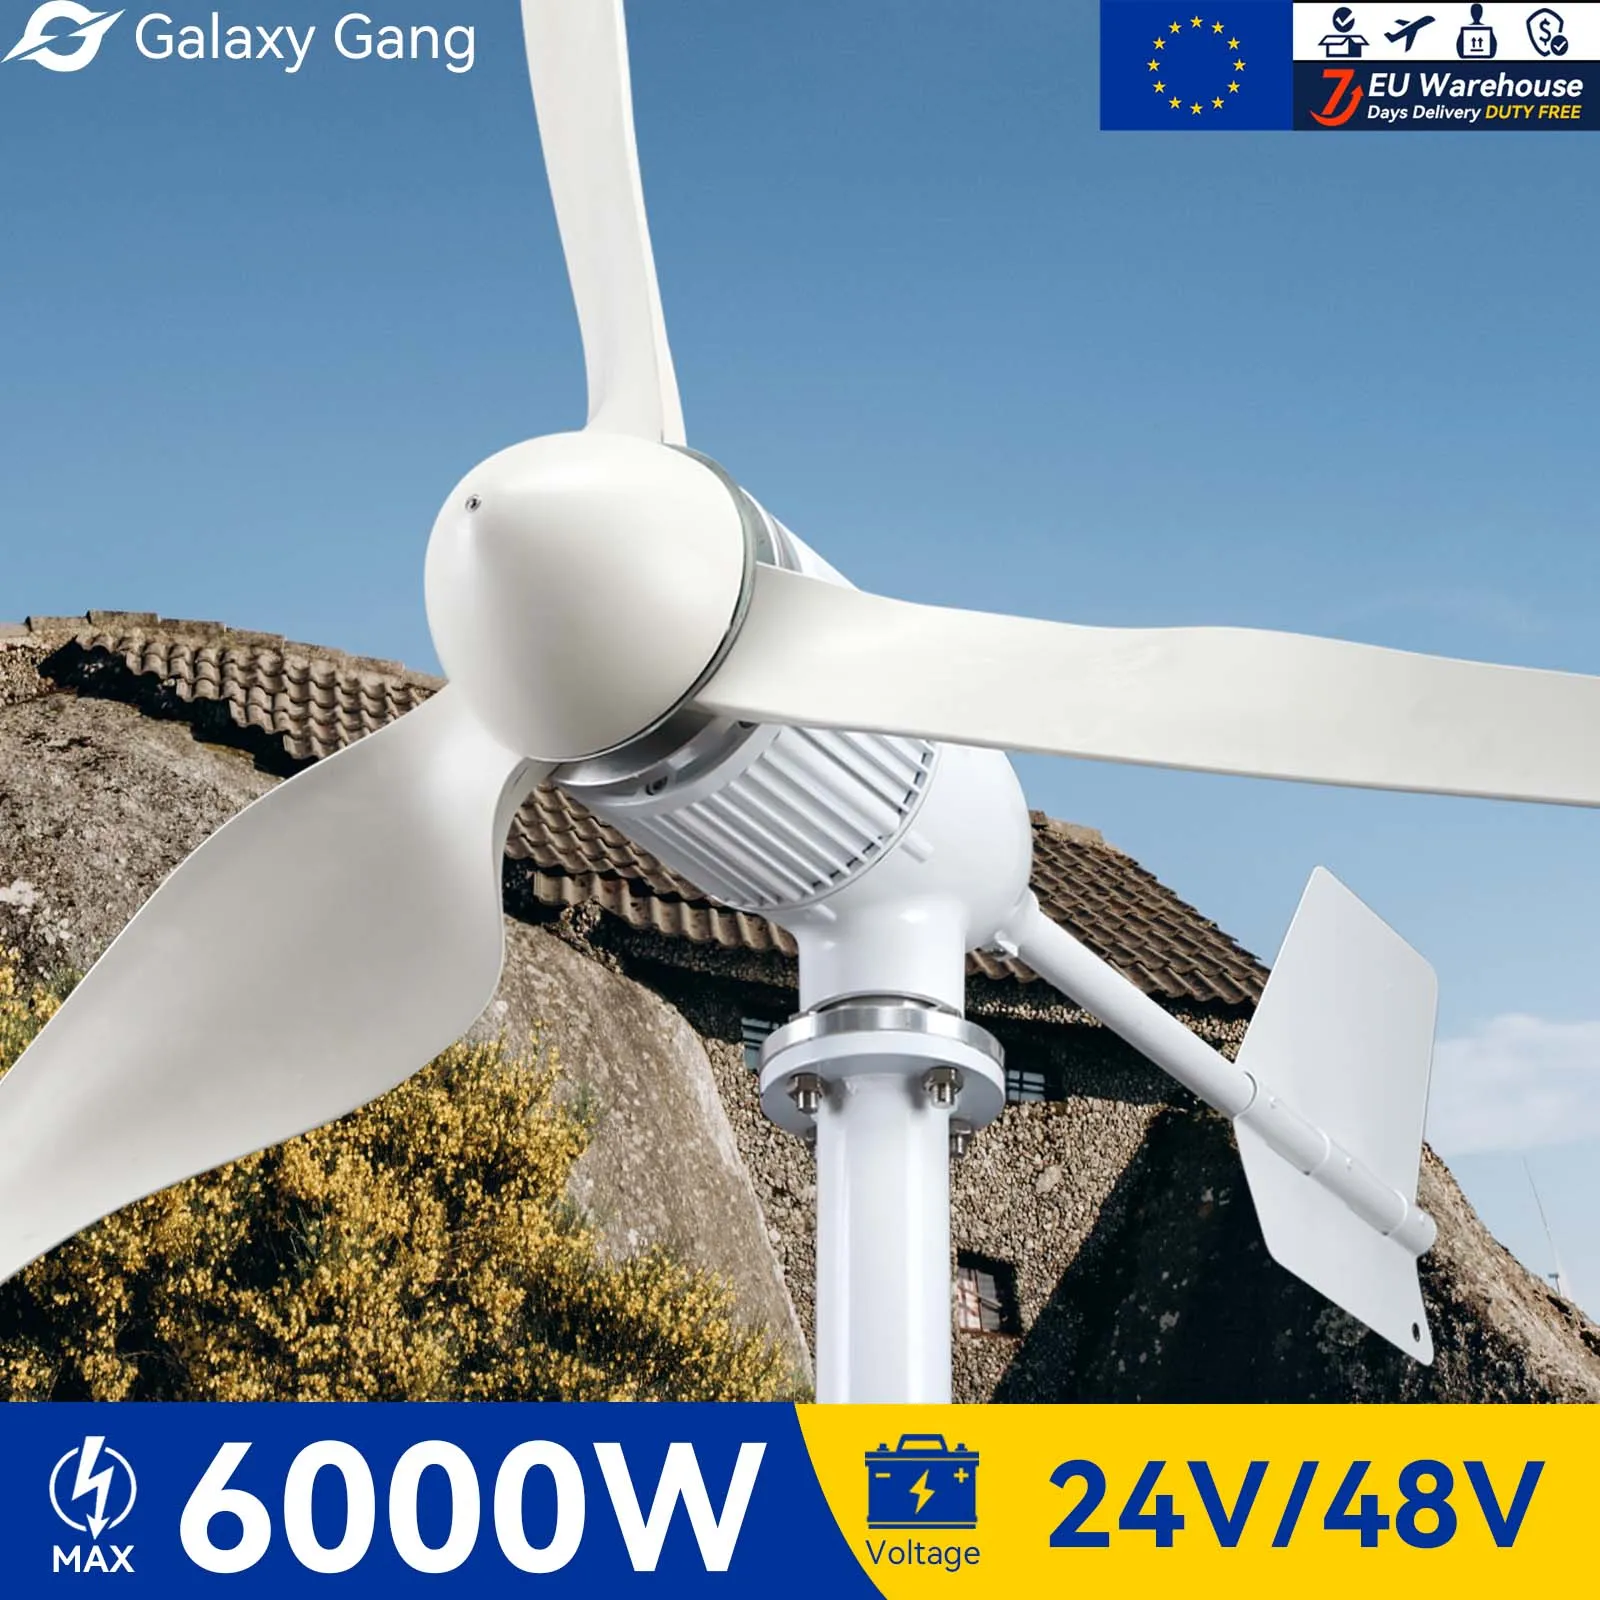 

Комплект генератора турбины Galaxy Gang 6000 Вт ветряная мельница мощность 6 кВт мощность 3 лезвия 24 в 48 в с контроллером MPPT неэлектрическая инверторная система ModelM6